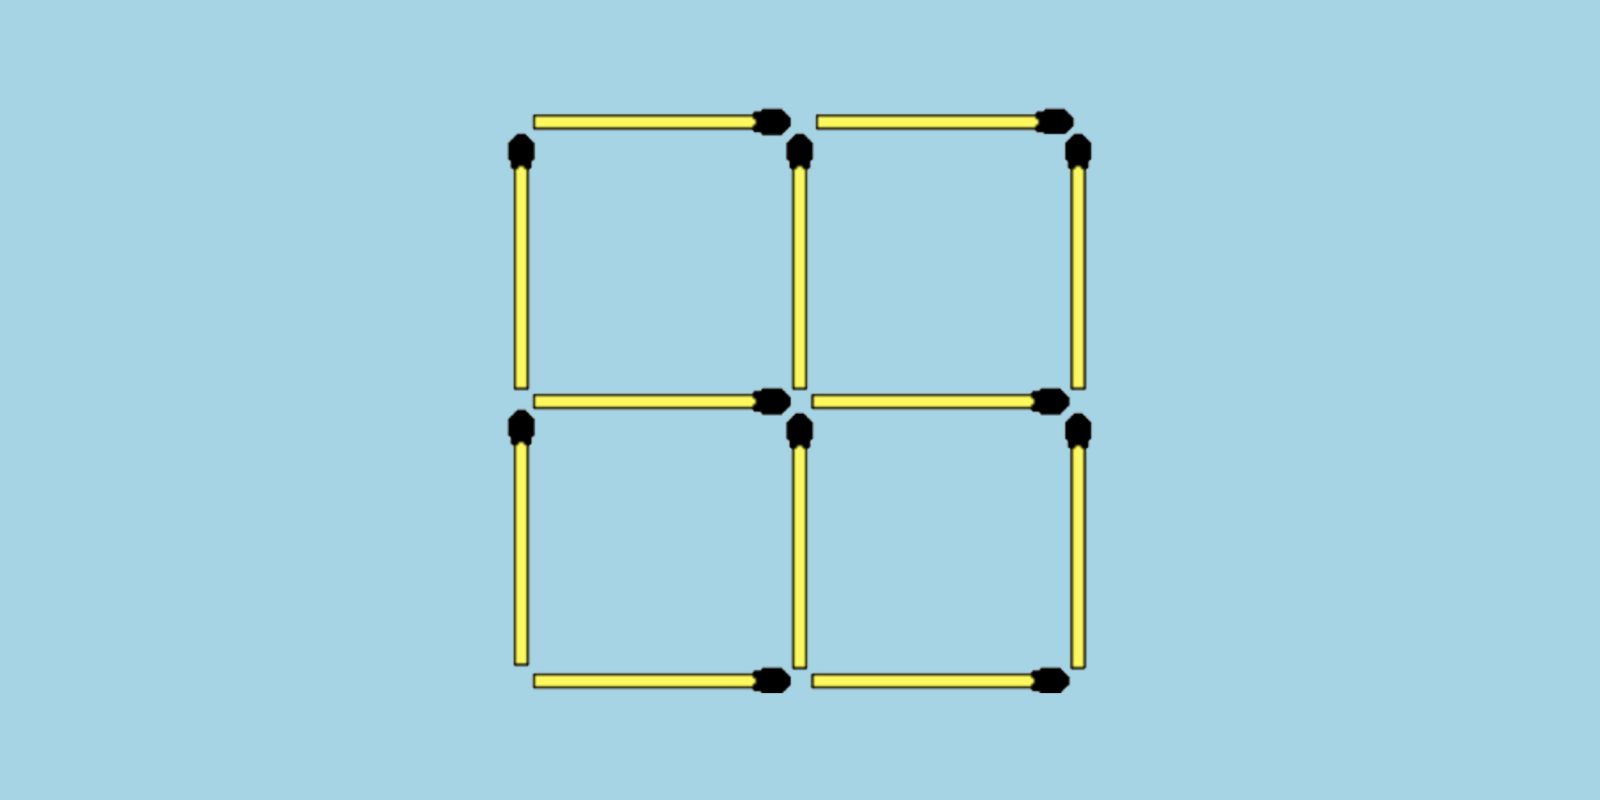 5 6 2 3 как делать. 2+6=9-1 Задача со спичками. Головоломки со спичками kvadrat. Переложите 4 спички так чтобы получилось 10 квадратов. Пять квадратов из спичек.